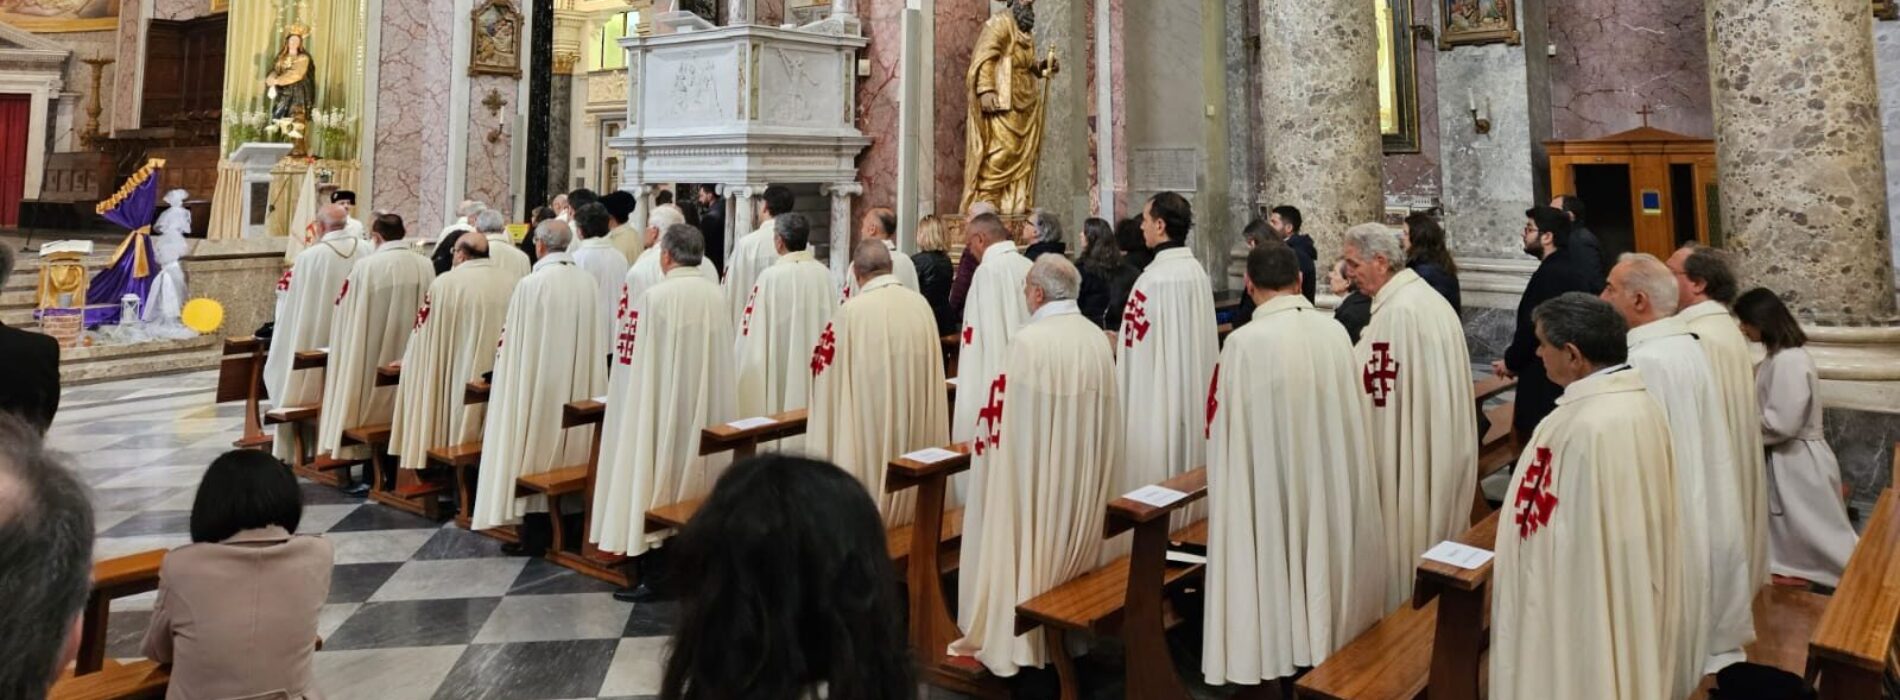 Ordine del Santo Sepolcro, al Duomo investiti i nuovi delegati